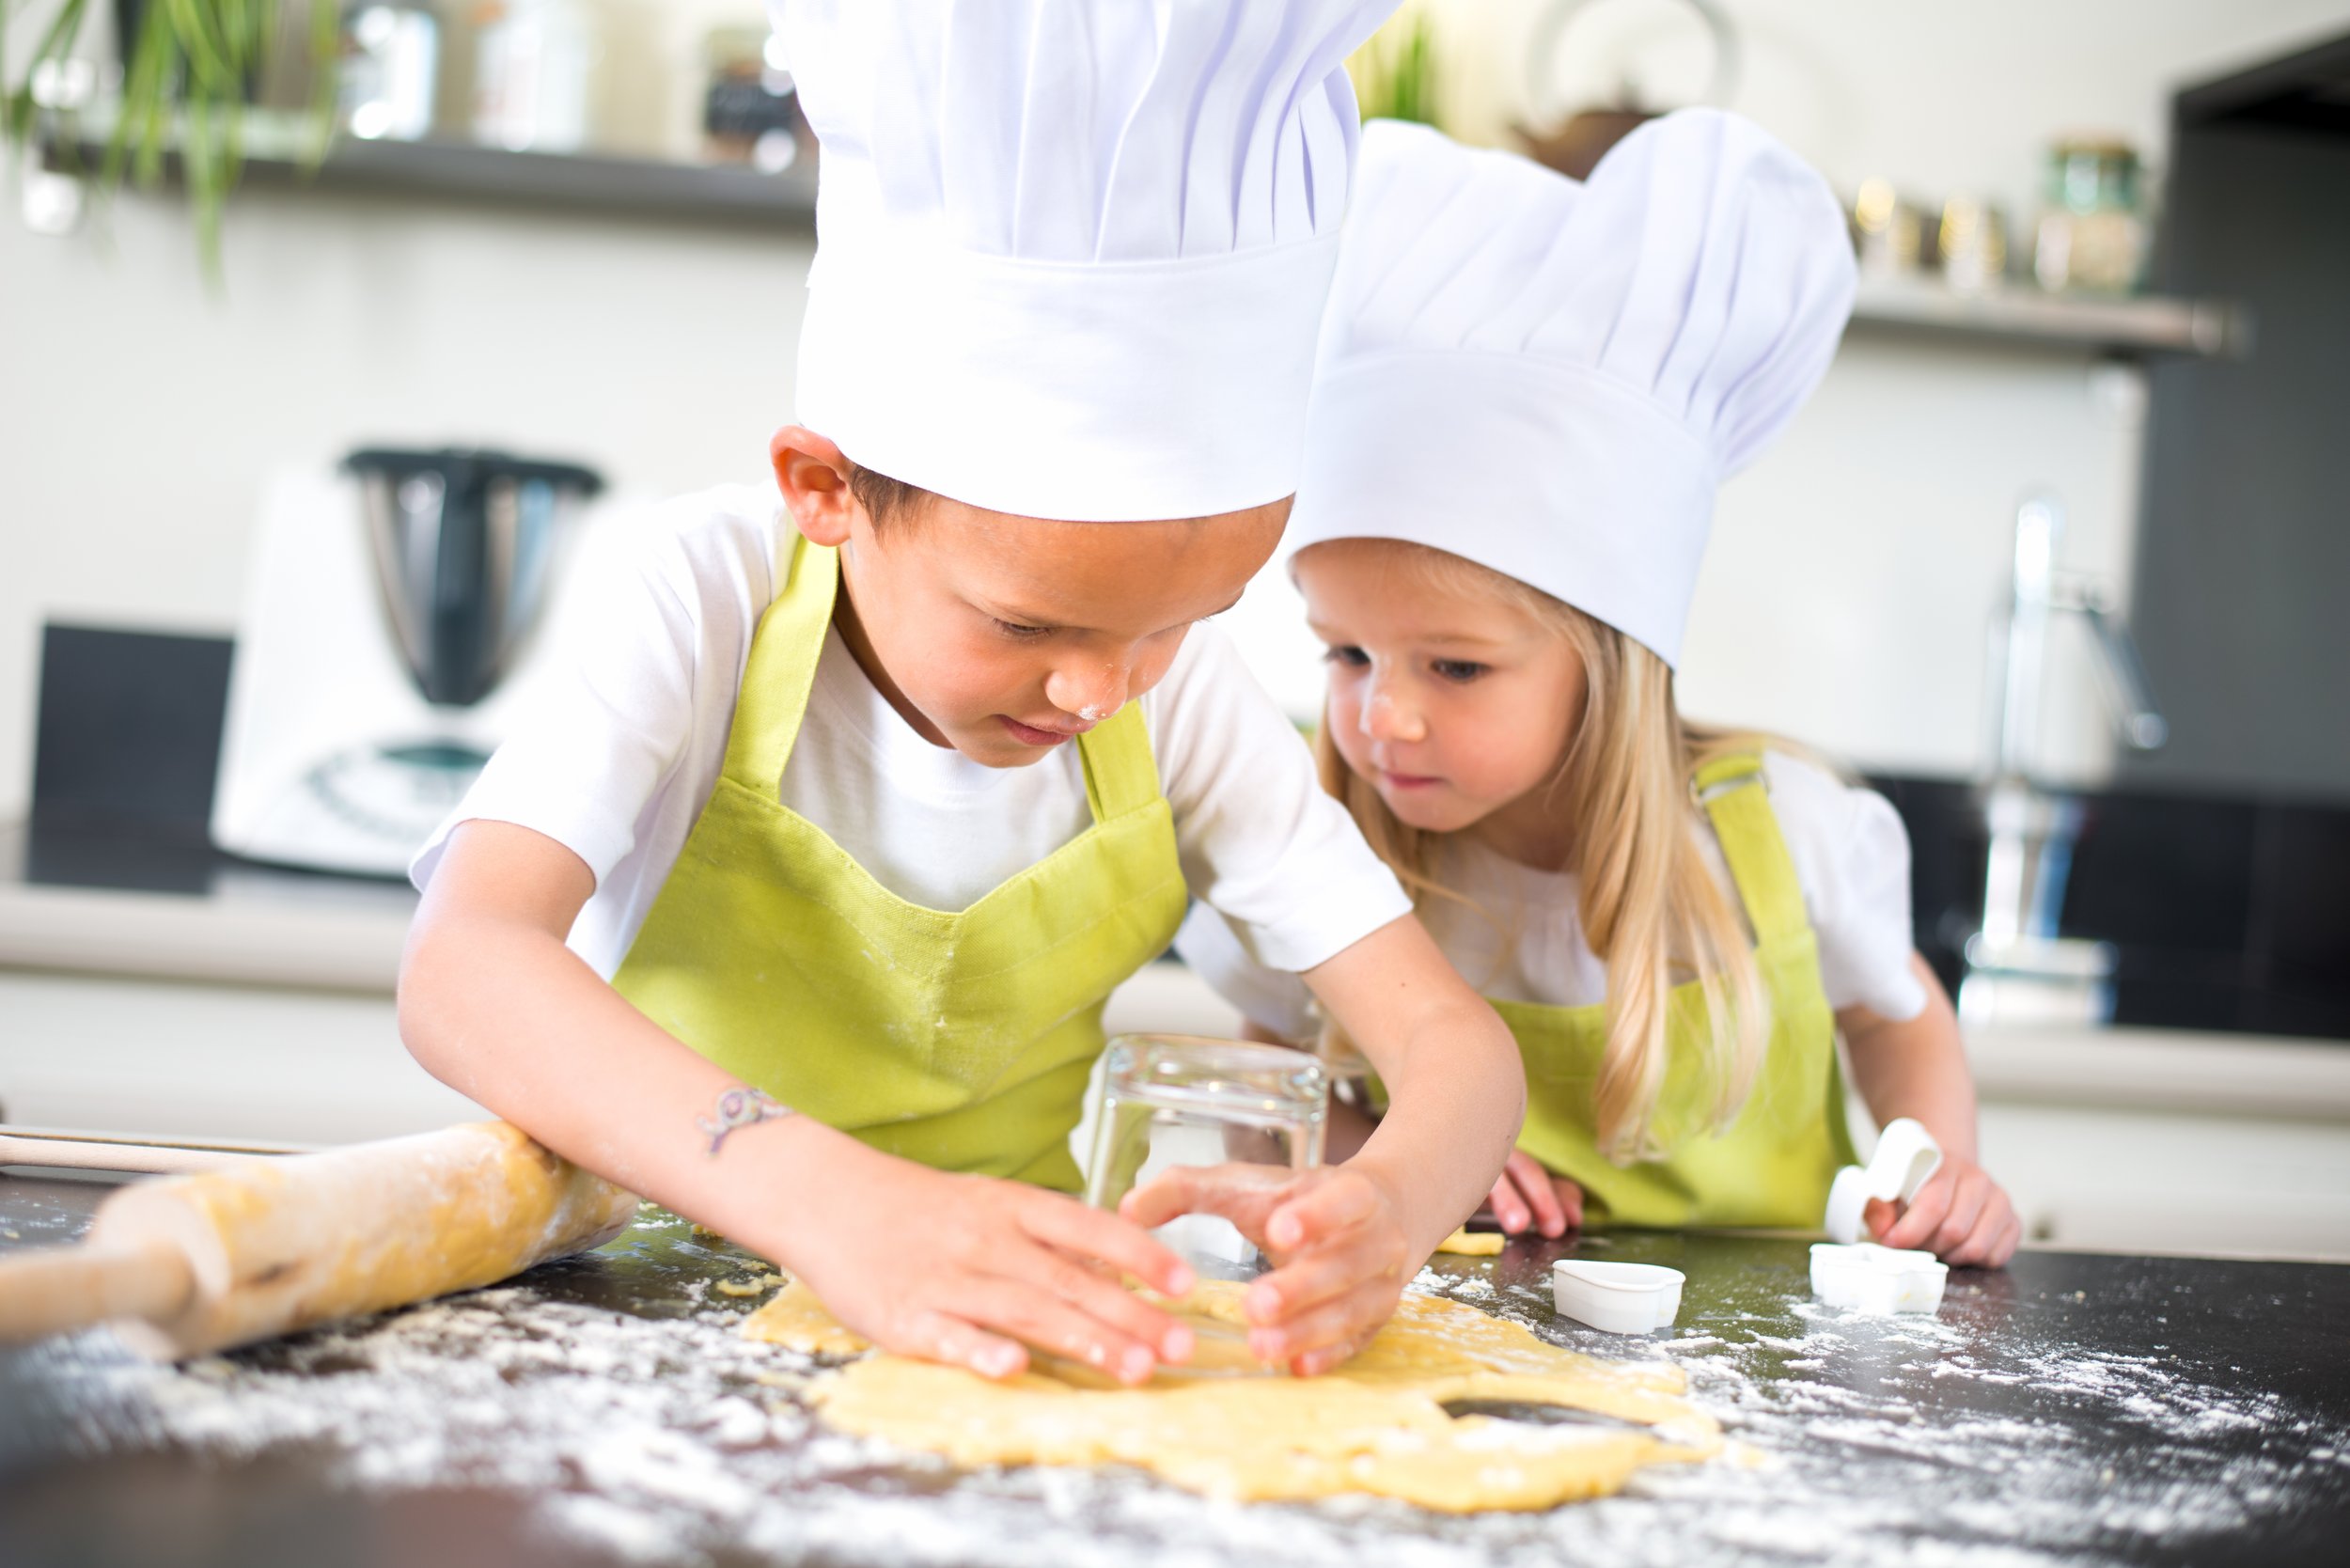 Children Baking.jpg